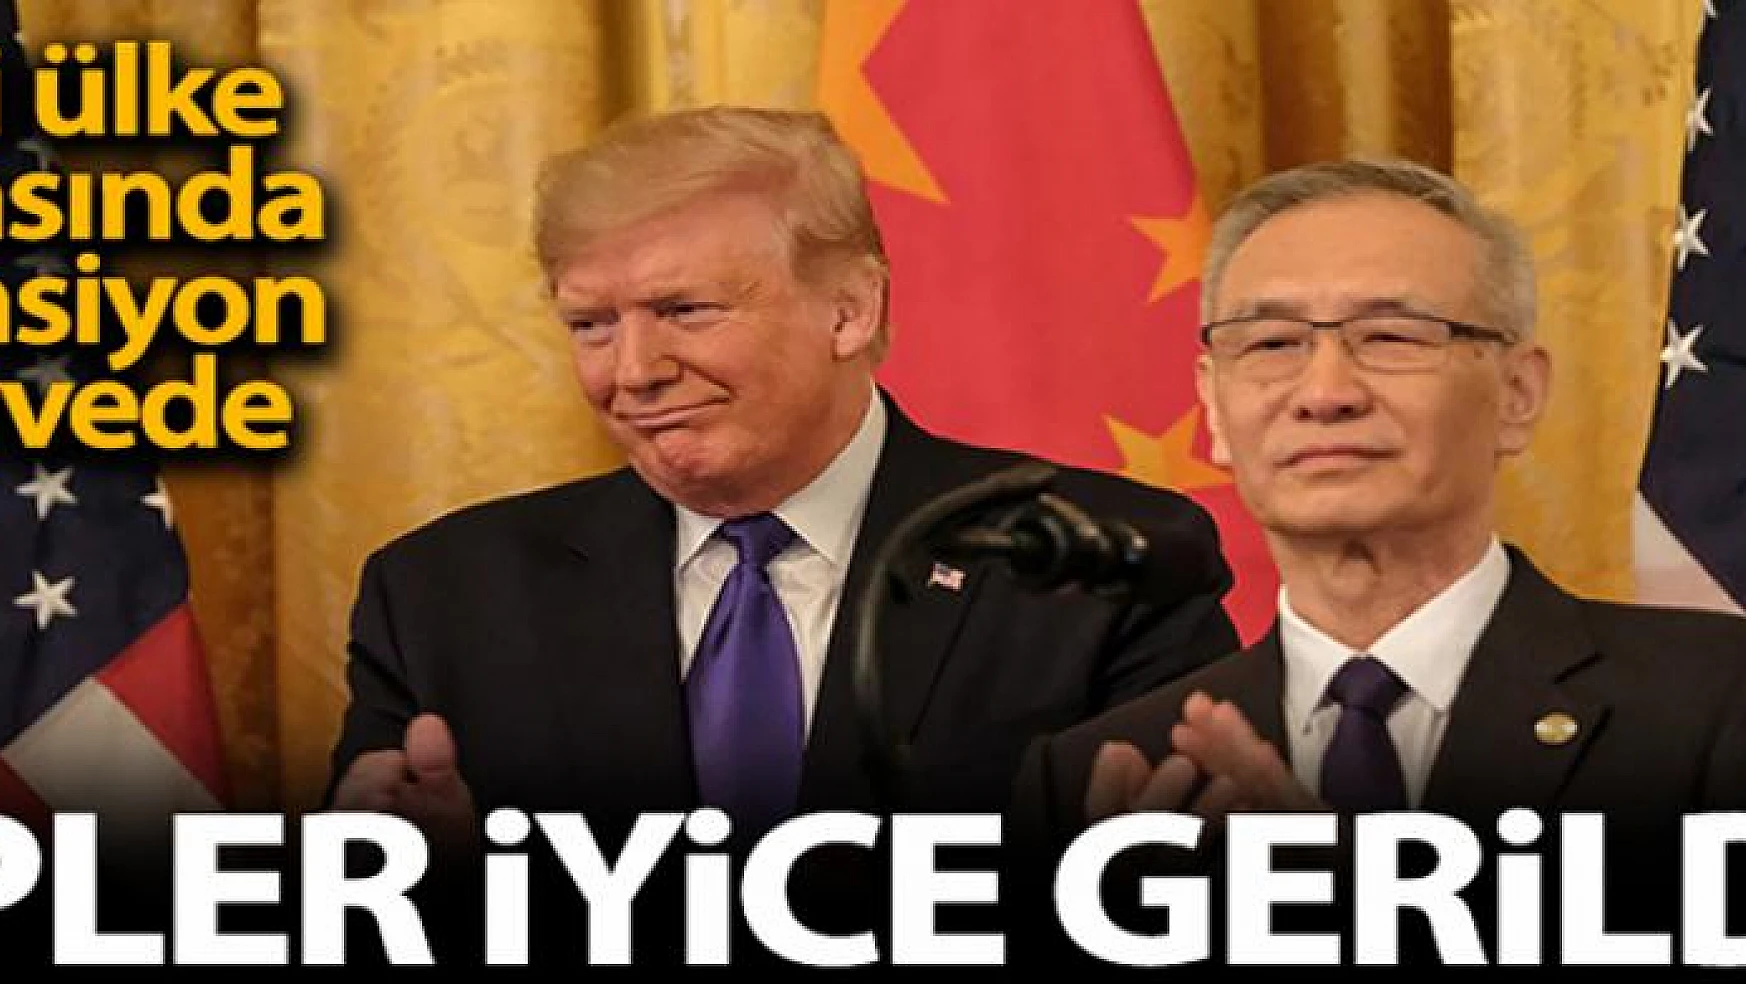 ABD ve Çin yönetimi arasında ipler iyice gerildi